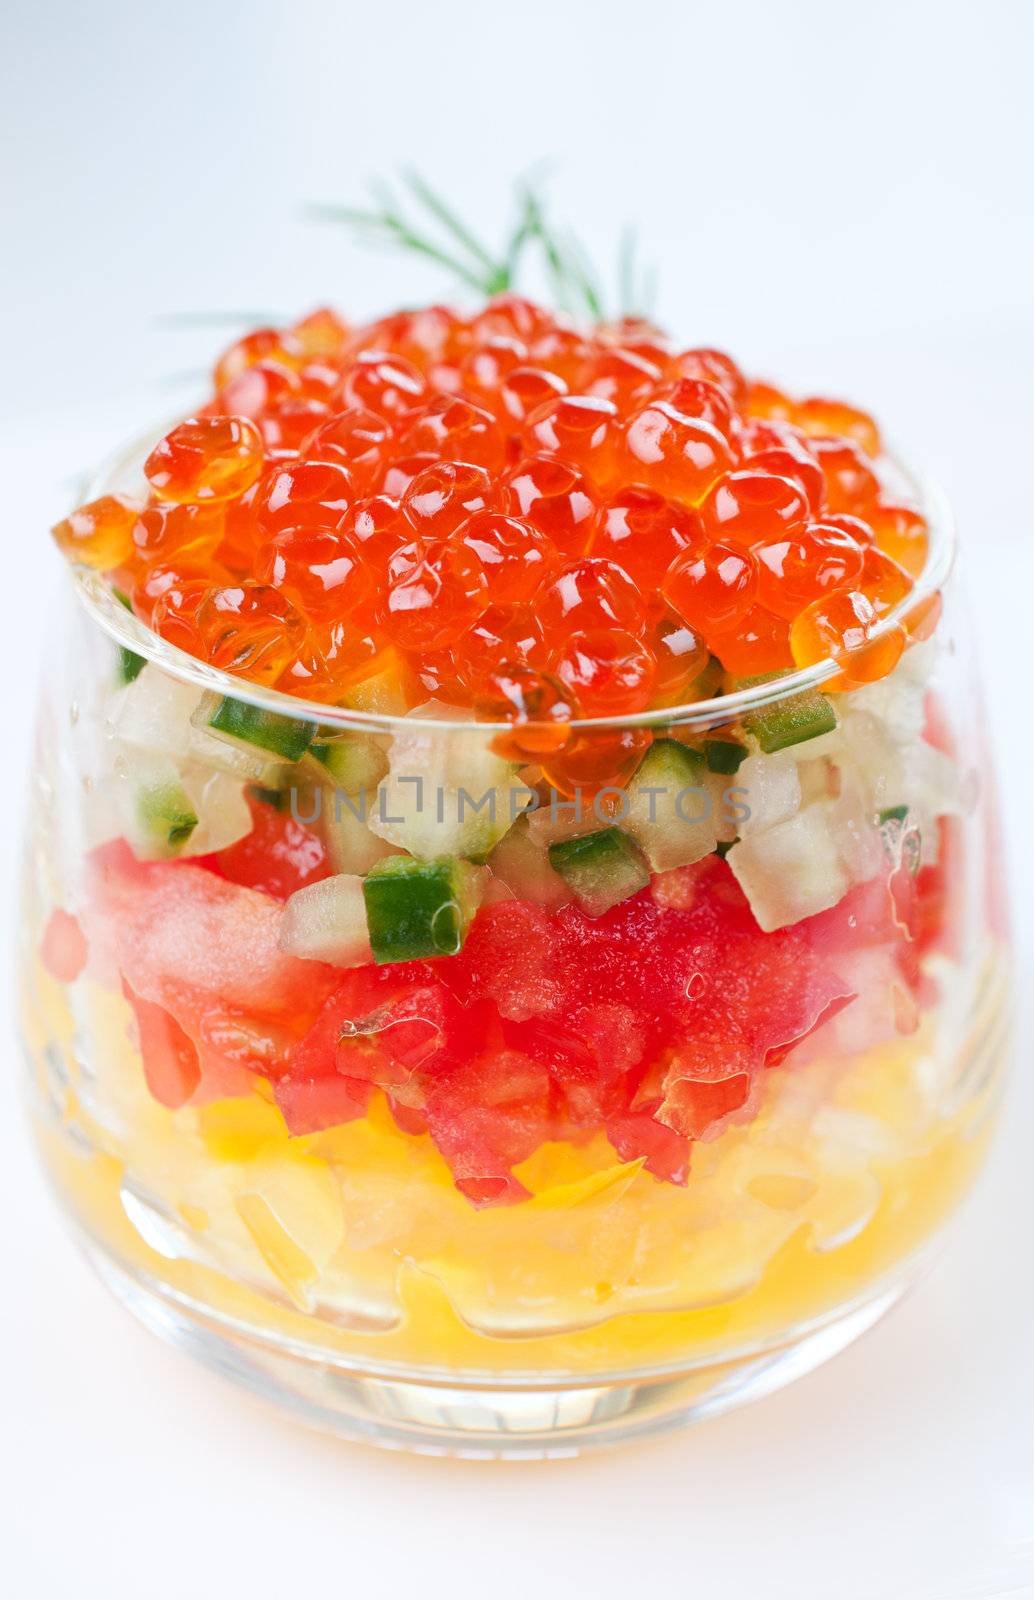 Caviar with vegetable salad  by Nanisimova